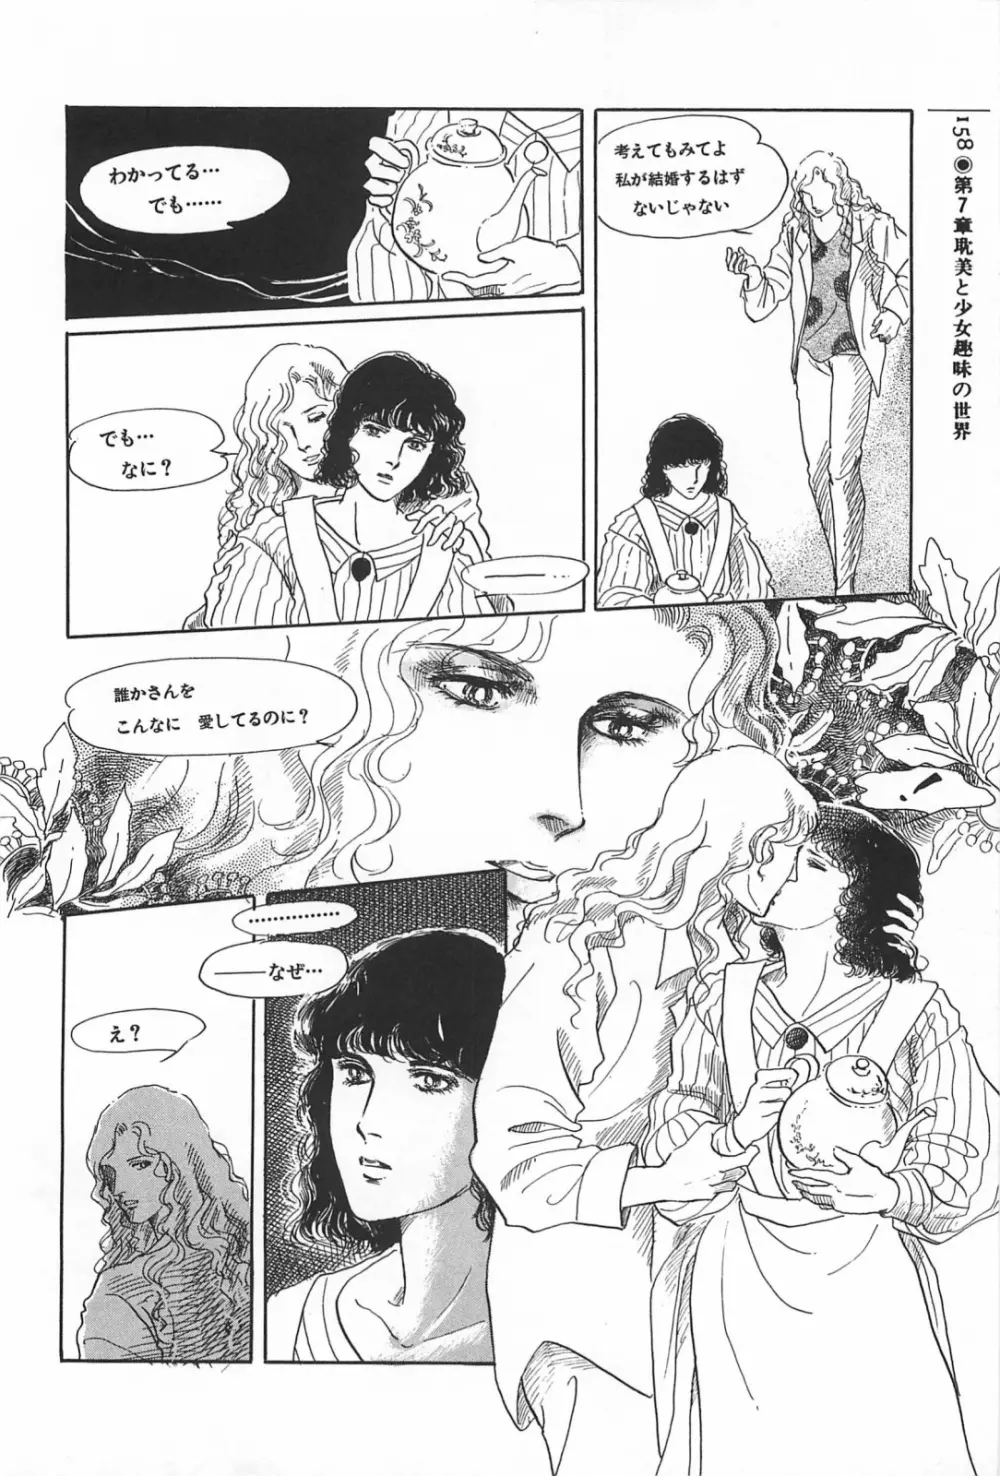 美少女症候群 1985 158ページ